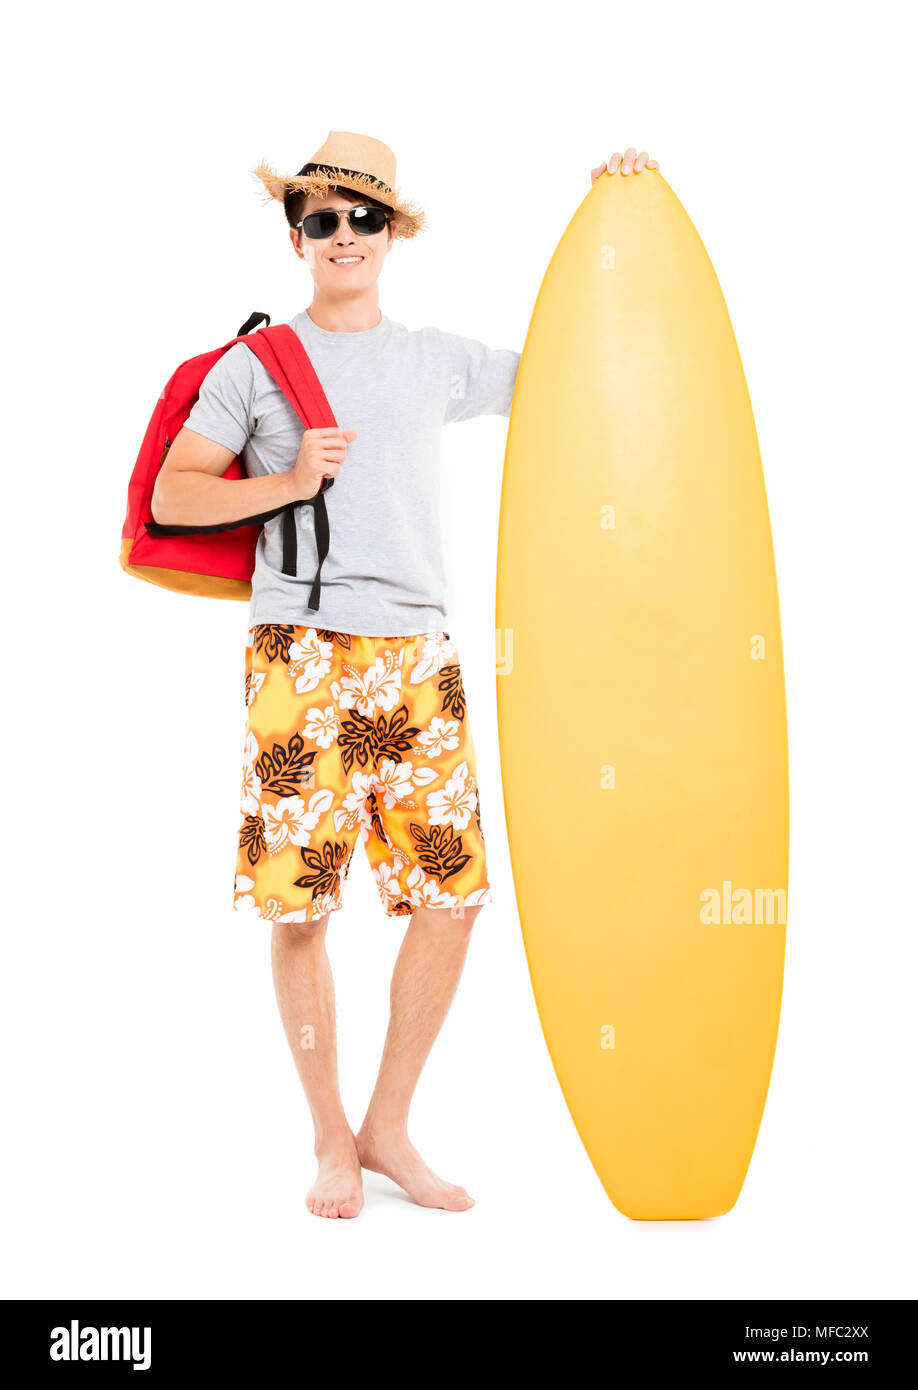 Uomo con la tavola da surf e vacanze estive concept Foto Stock